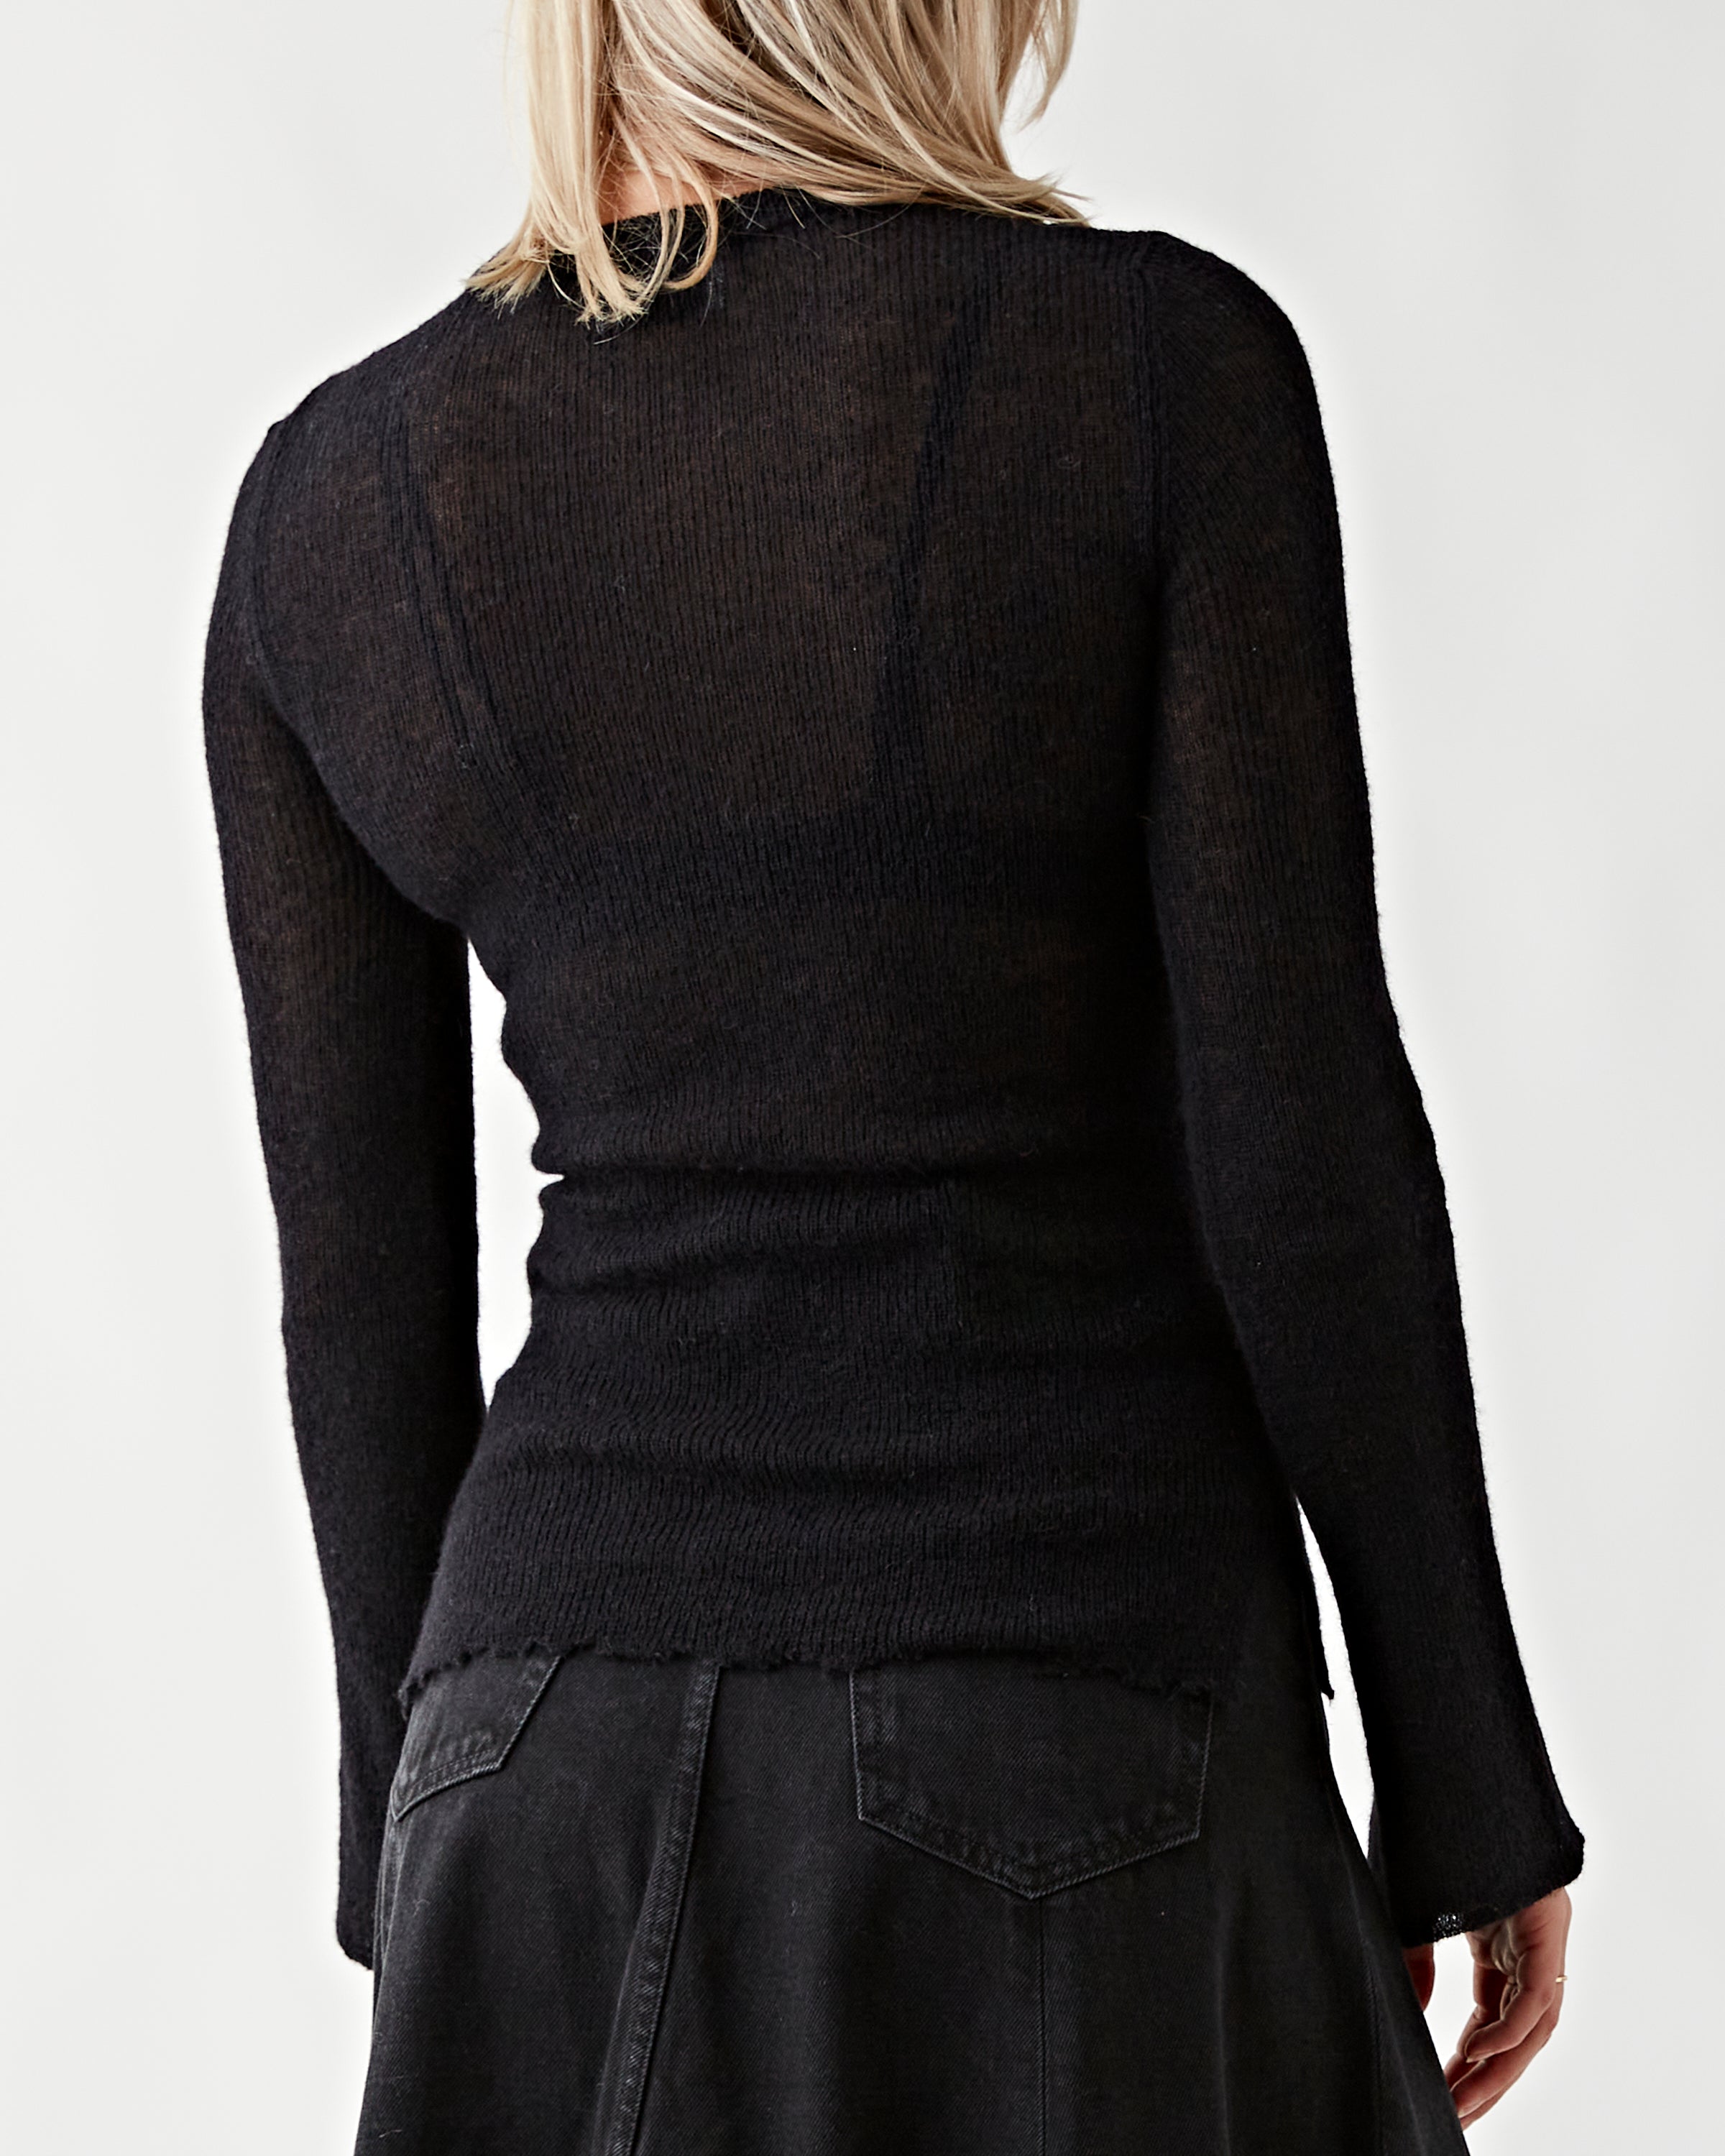 Haikure Nina Black Sweater Women